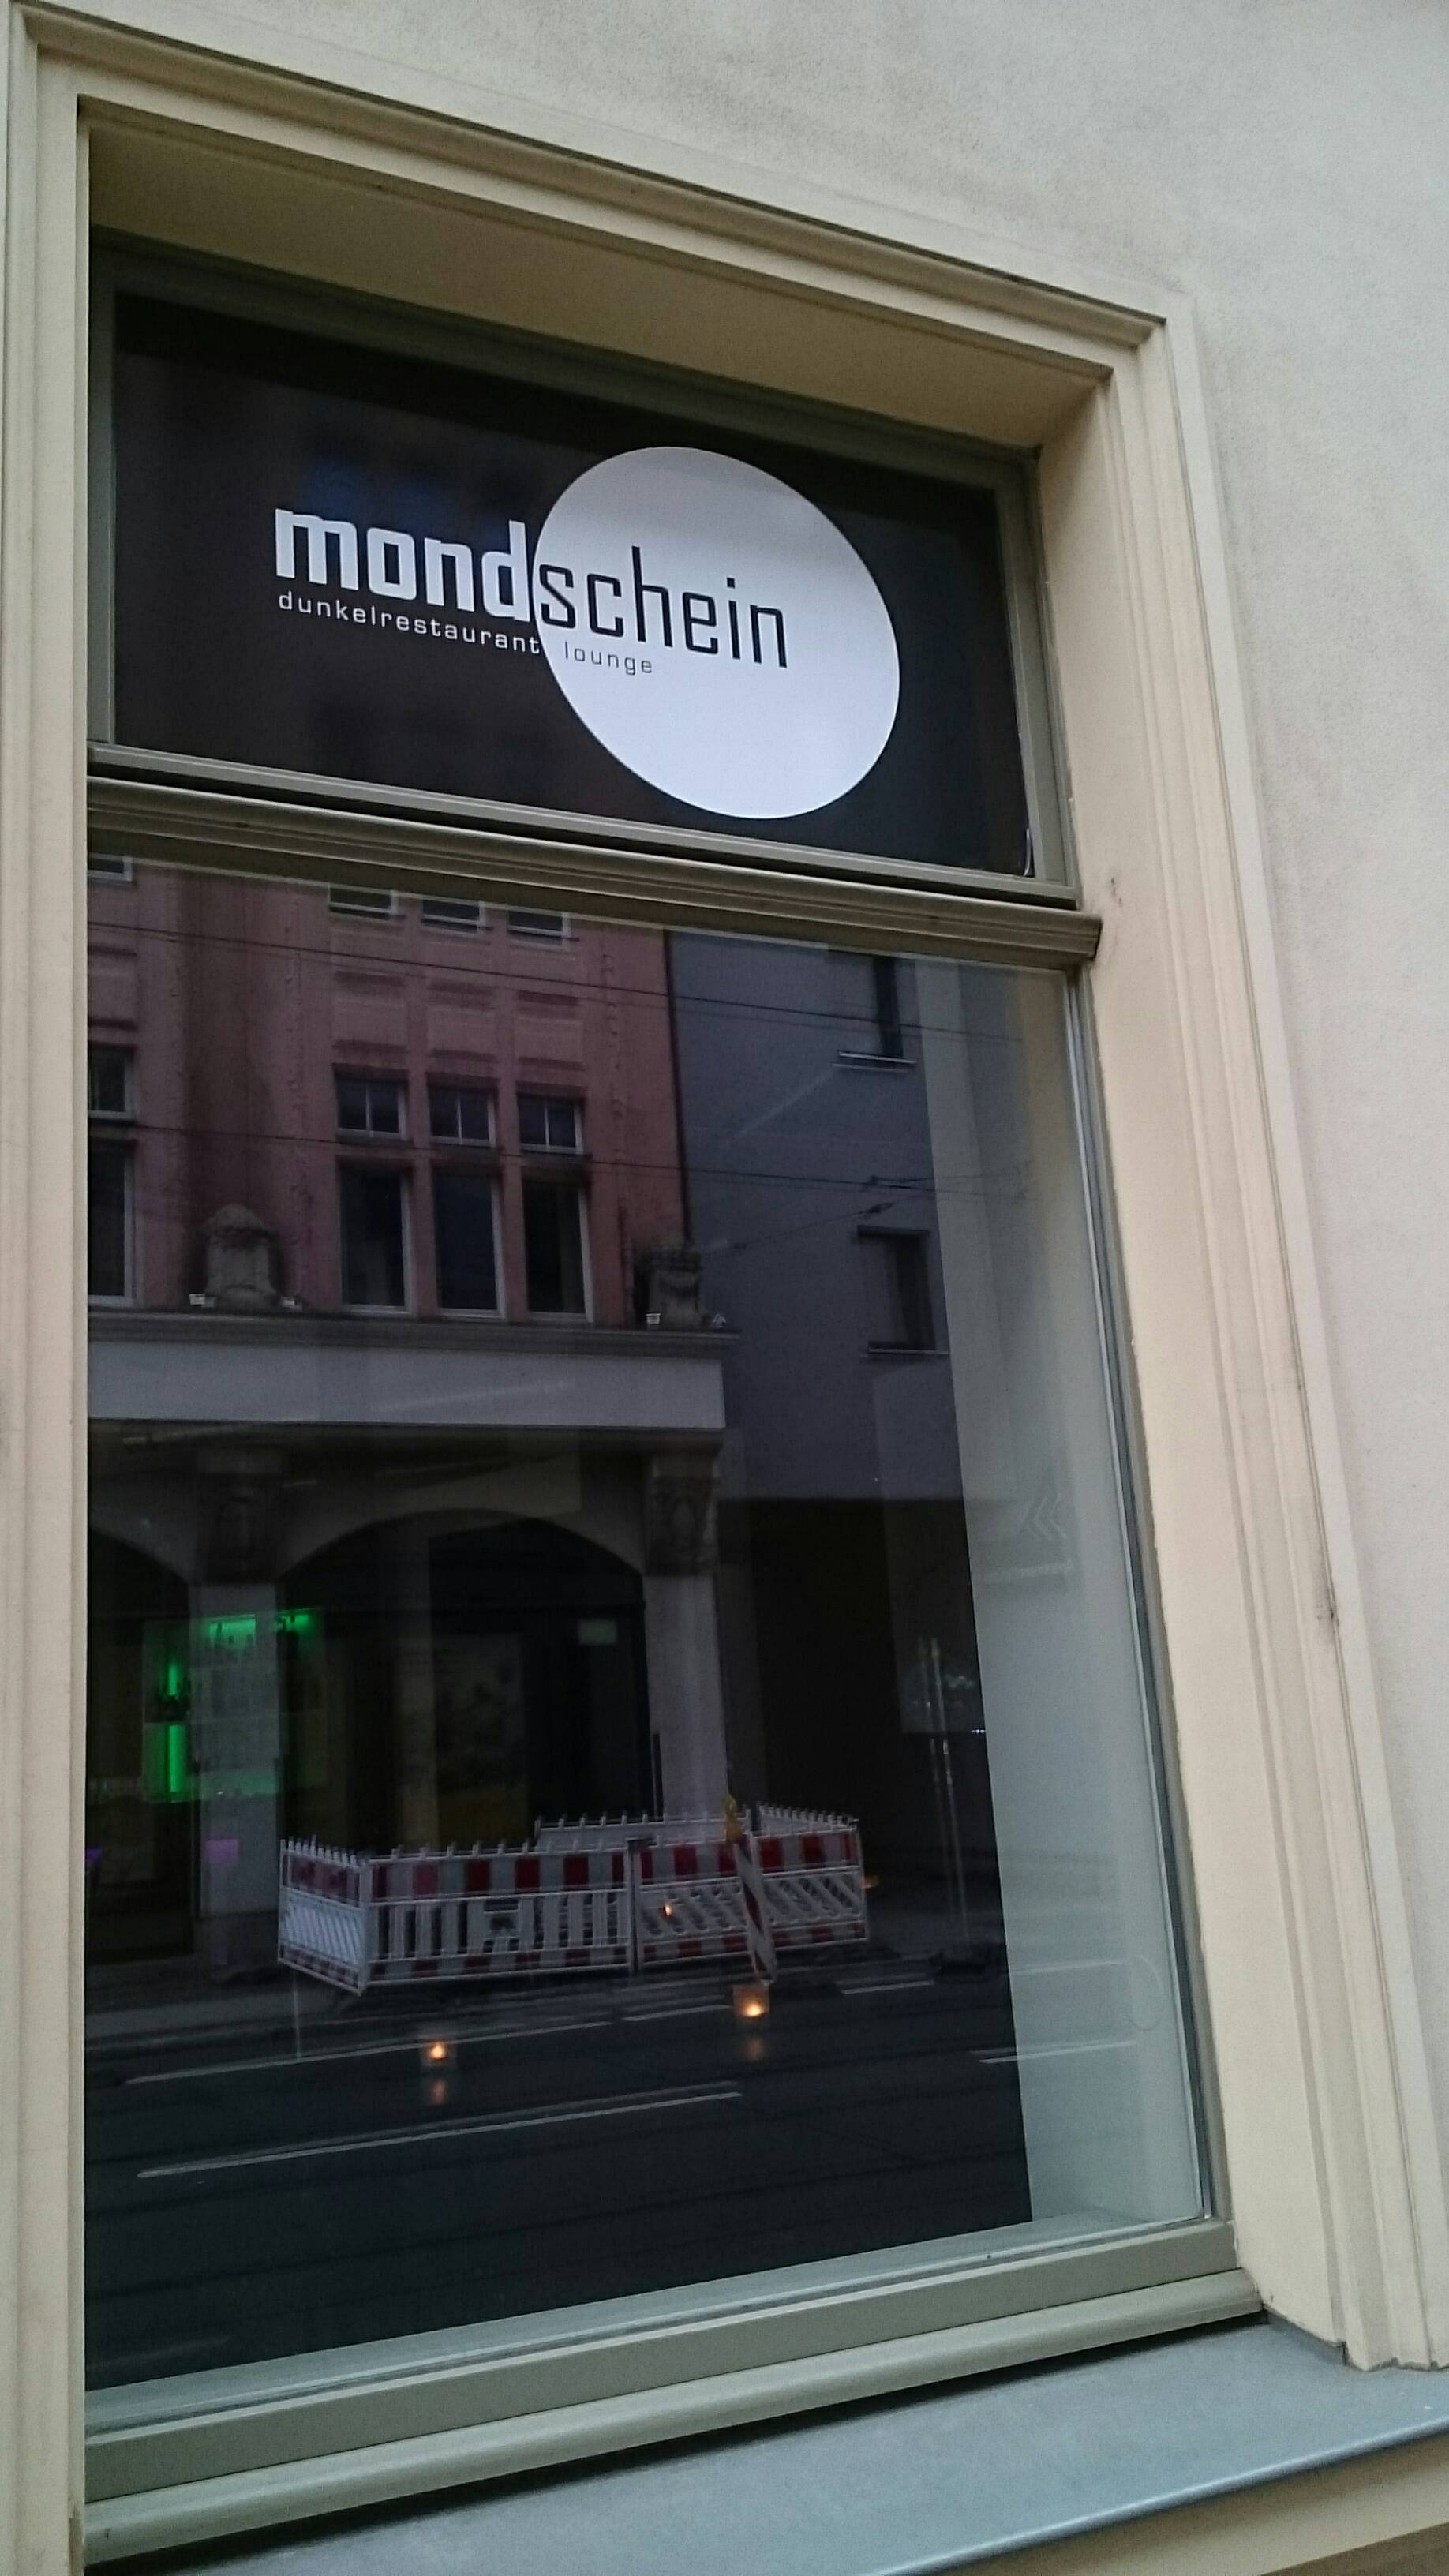 Bild 1 Mondschein Dunkel Restaurant in Leipzig